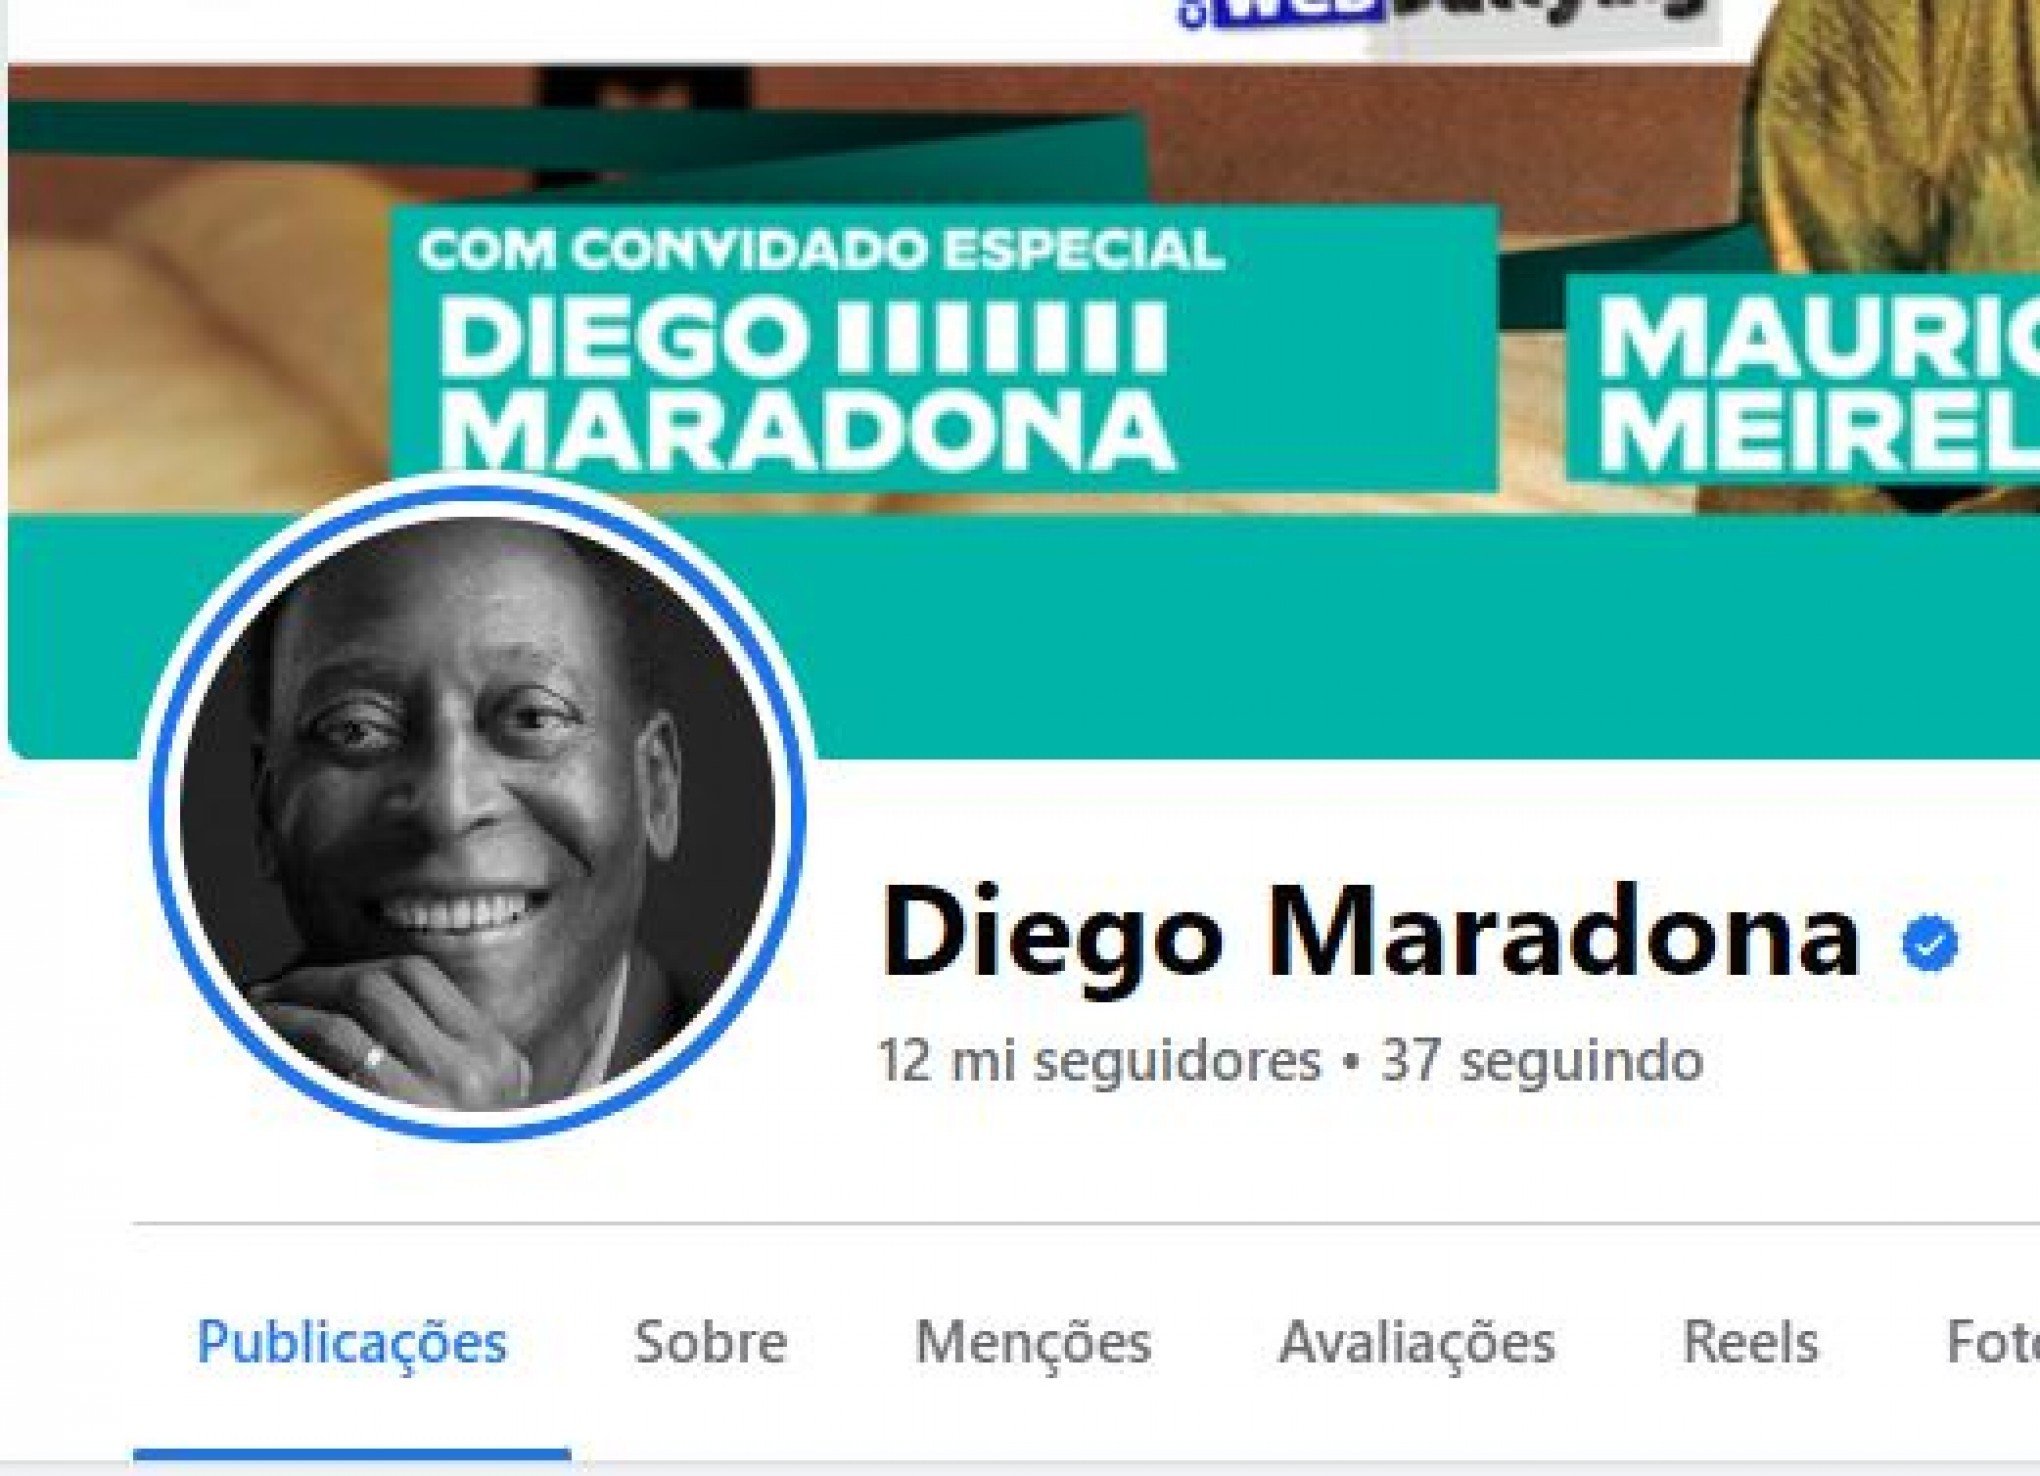 Hacker invade Facebook de Diego Maradona e coloca foto de Pelé no perfil: "Meu grande ídolo"